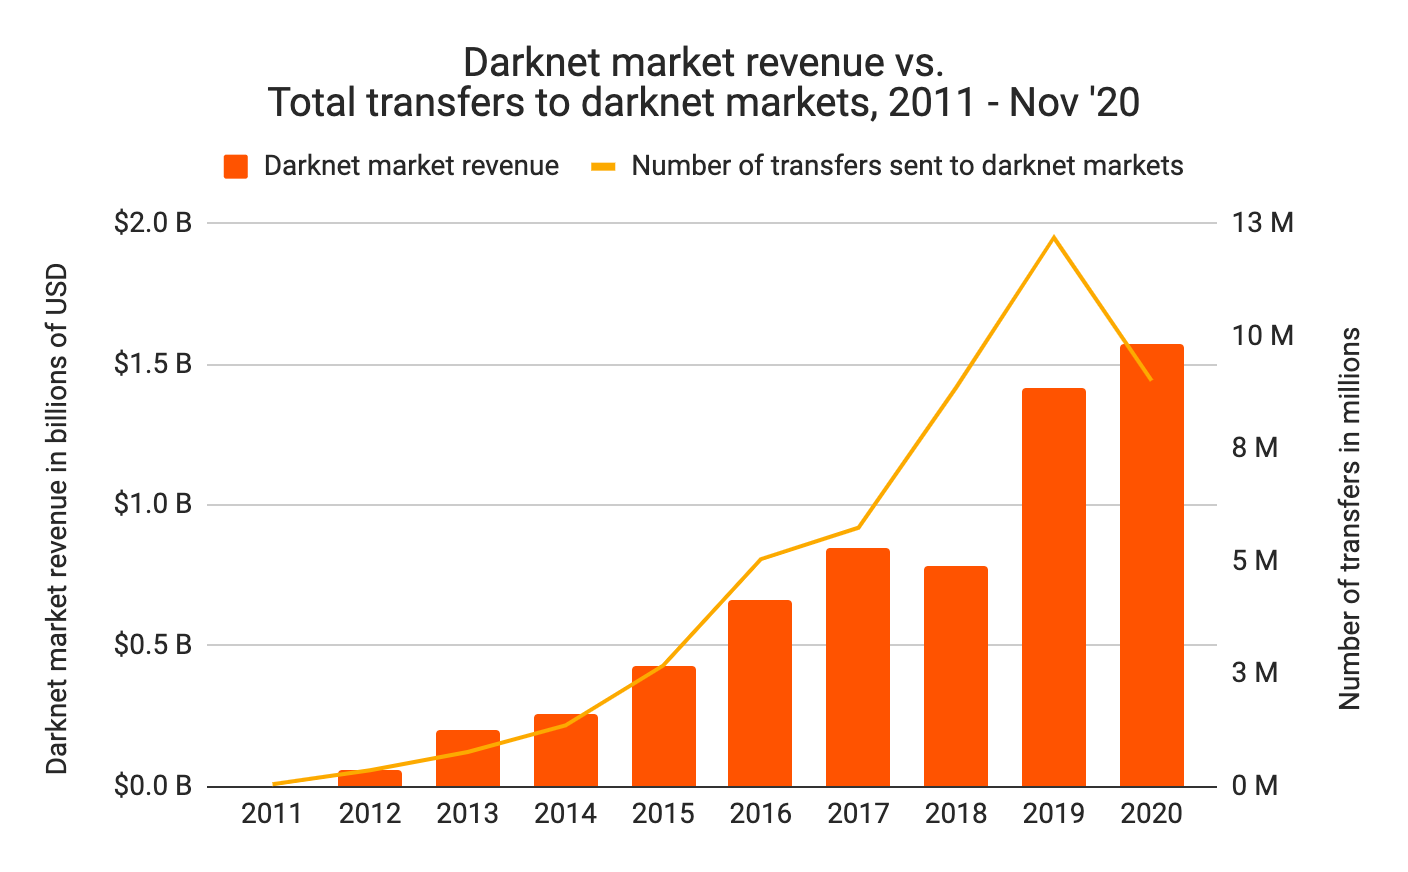 Darknet Market Guide Reddit